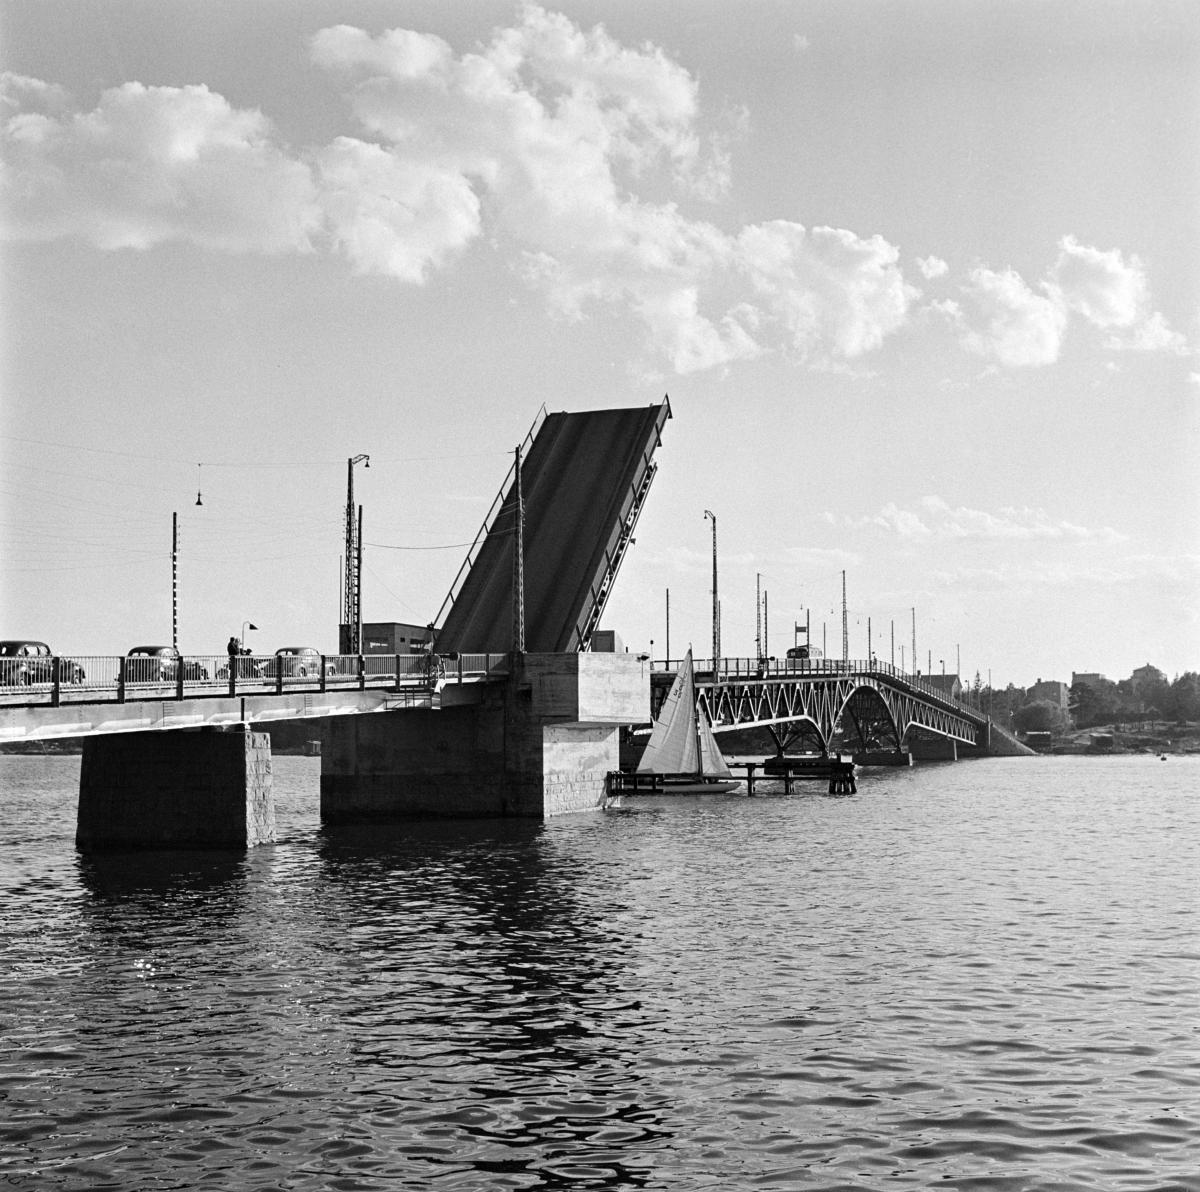 Den första bron till Drumsö. Bilden tagen år 1953 från Sundholmen. Klaffbron har fällts upp och bilar står i kö i väntan på att få köra över bron. Ett litet segelfartyg passerar under bron. 